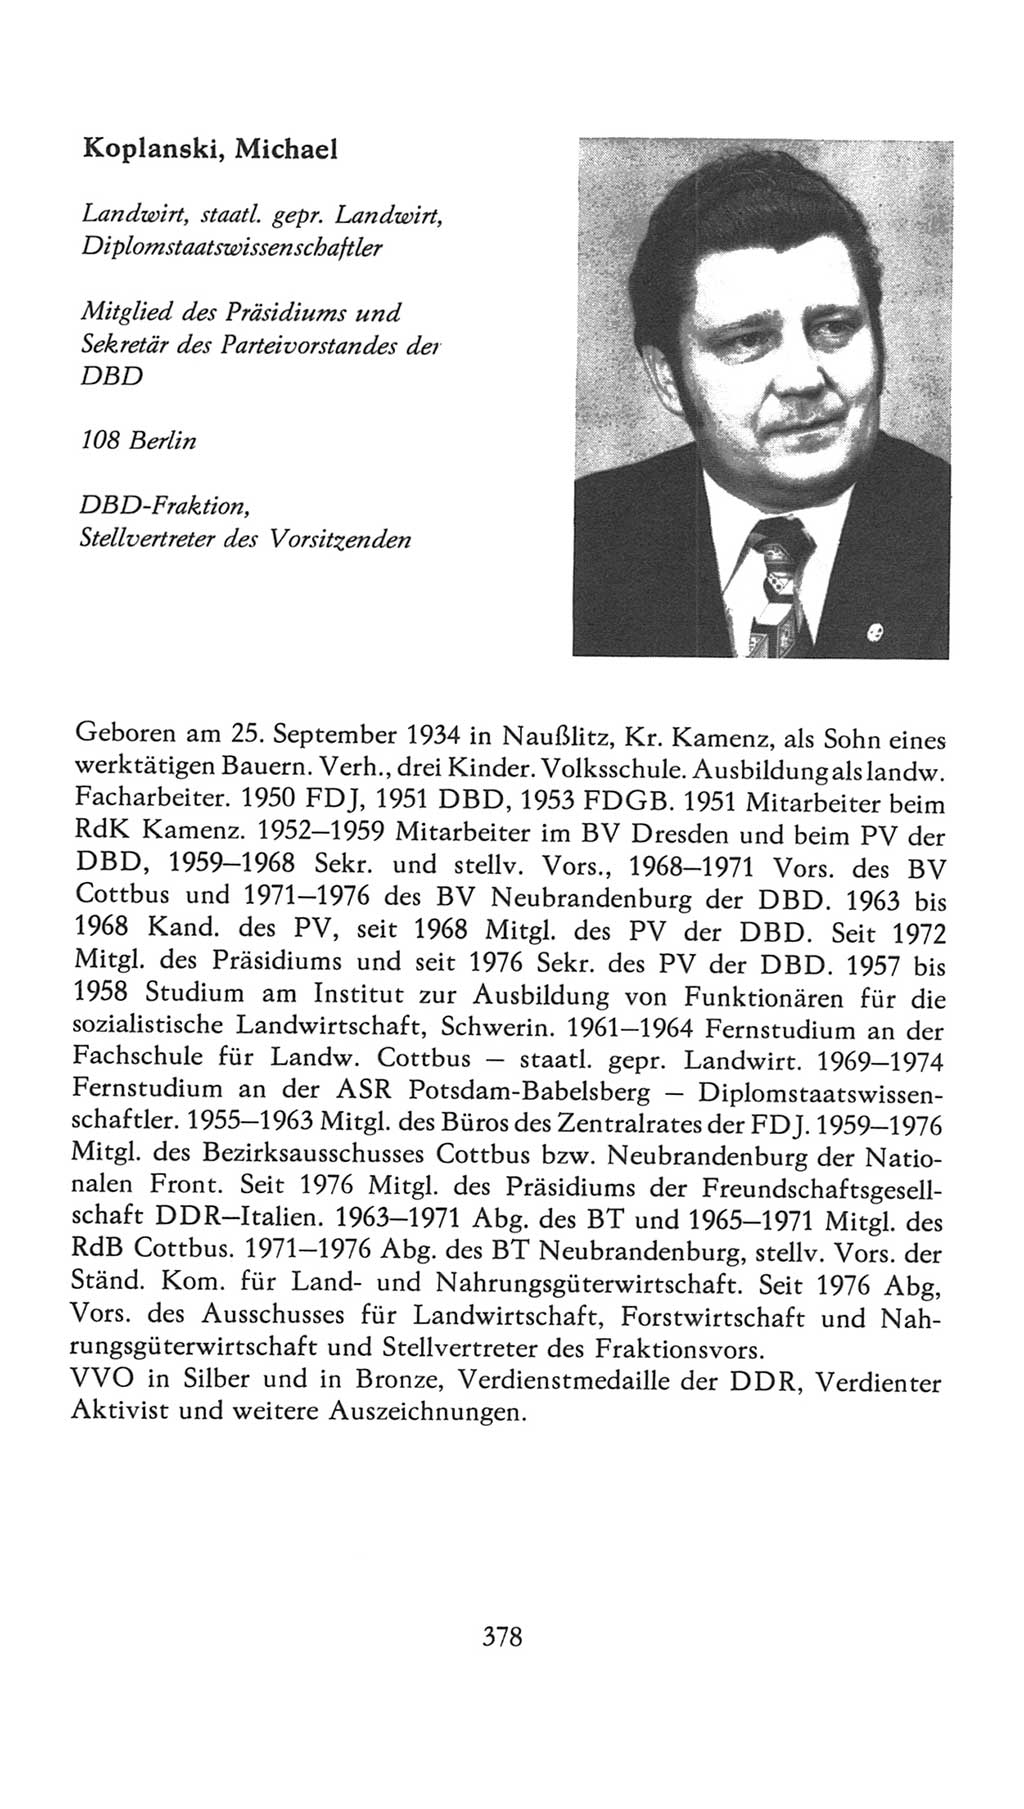 Volkskammer (VK) der Deutschen Demokratischen Republik (DDR), 7. Wahlperiode 1976-1981, Seite 378 (VK. DDR 7. WP. 1976-1981, S. 378)